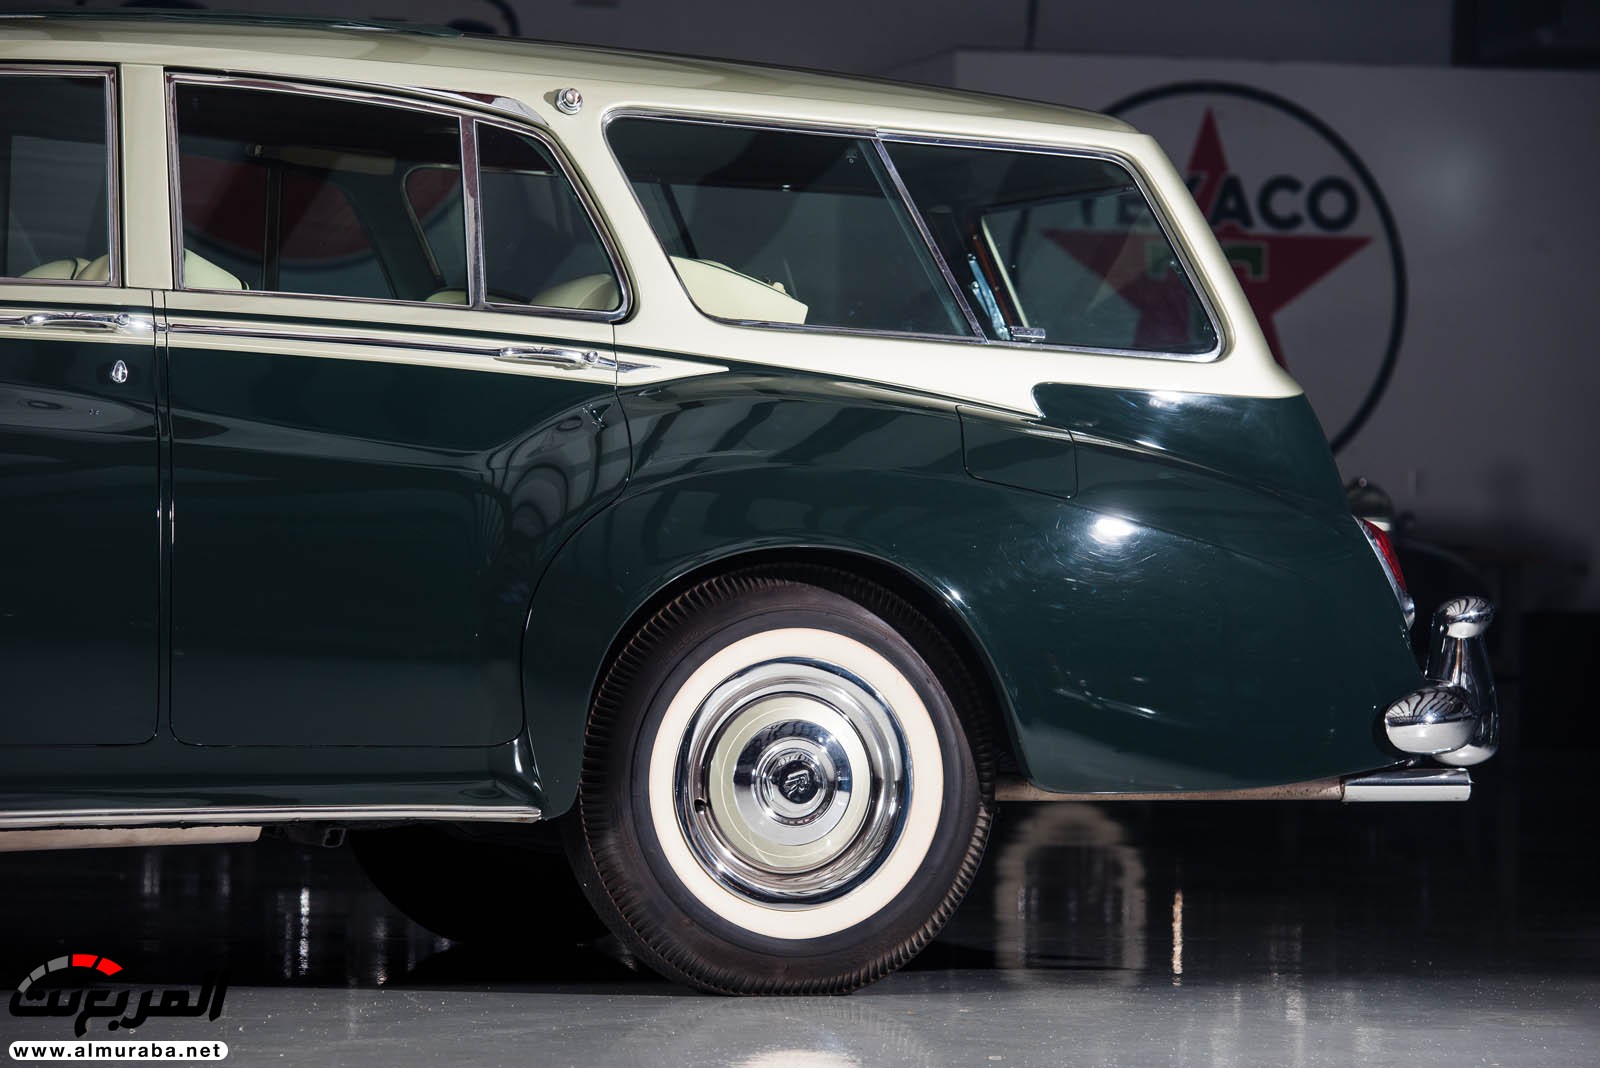 "رولز رويس" سيلفر كلاود 1959 ذات هيكلة الواجن تتوجه لتباع في مزاد عالمي Rolls-Royce Silver Cloud 68